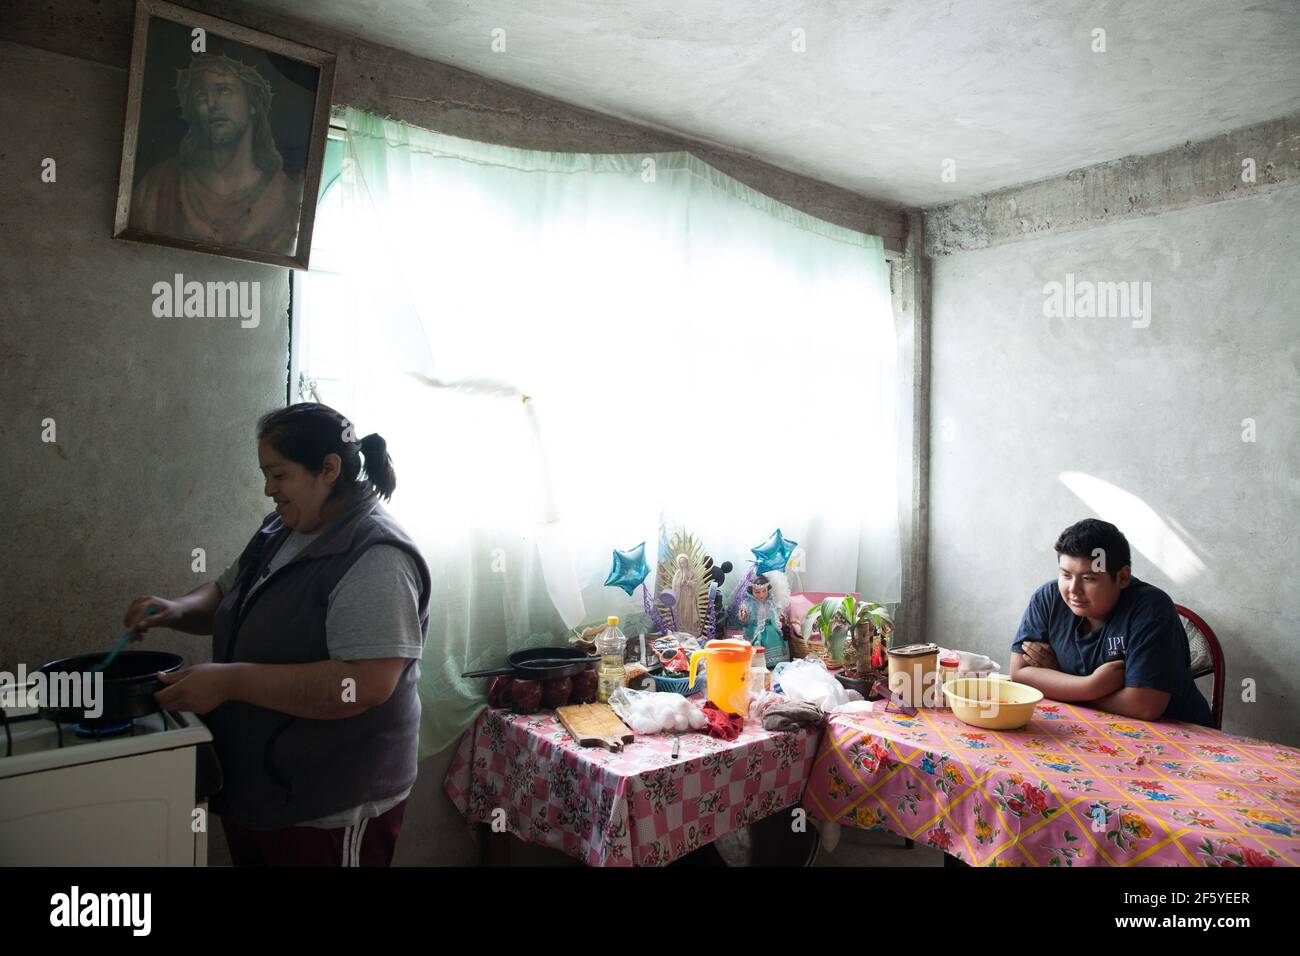 Ubaldo Alexis García López, un niño mexicano de 14 años, come el almuerzo con su madre Yolanda, en su casa en Iztapalapa, uno de los barrios más pobres de la Ciudad de México, México, el 25 de junio de 2015. Ubaldo pesa 190 libras y mide 176 centímetros. En 2011, Ubaldo pesó 169 libras y tenía 145 centímetros de altura, con un IMC de 36,5. Estaba cerca de morir debido a una serie de enfermedades relacionadas con la obesidad mórbida y fue admitido en la sala de urgencias del Hospital Infantil Federico Gómez de la Ciudad de México, donde fue diagnosticado con apnea obstructiva crónica del sueño grave, hipopnea, síndrome metabólico X. Foto de stock